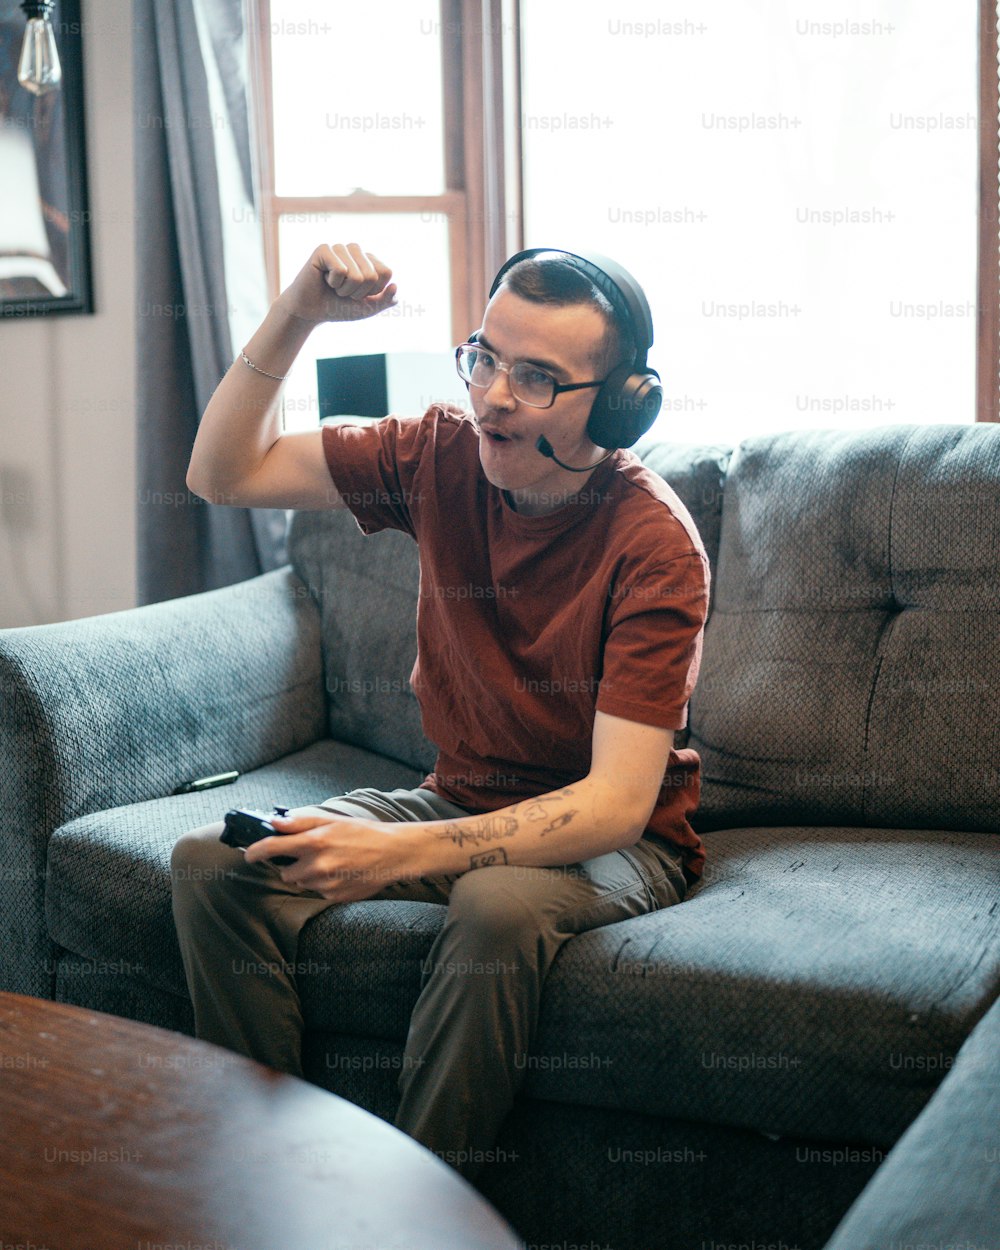 Un hombre sentado en un sofá con auriculares puestos